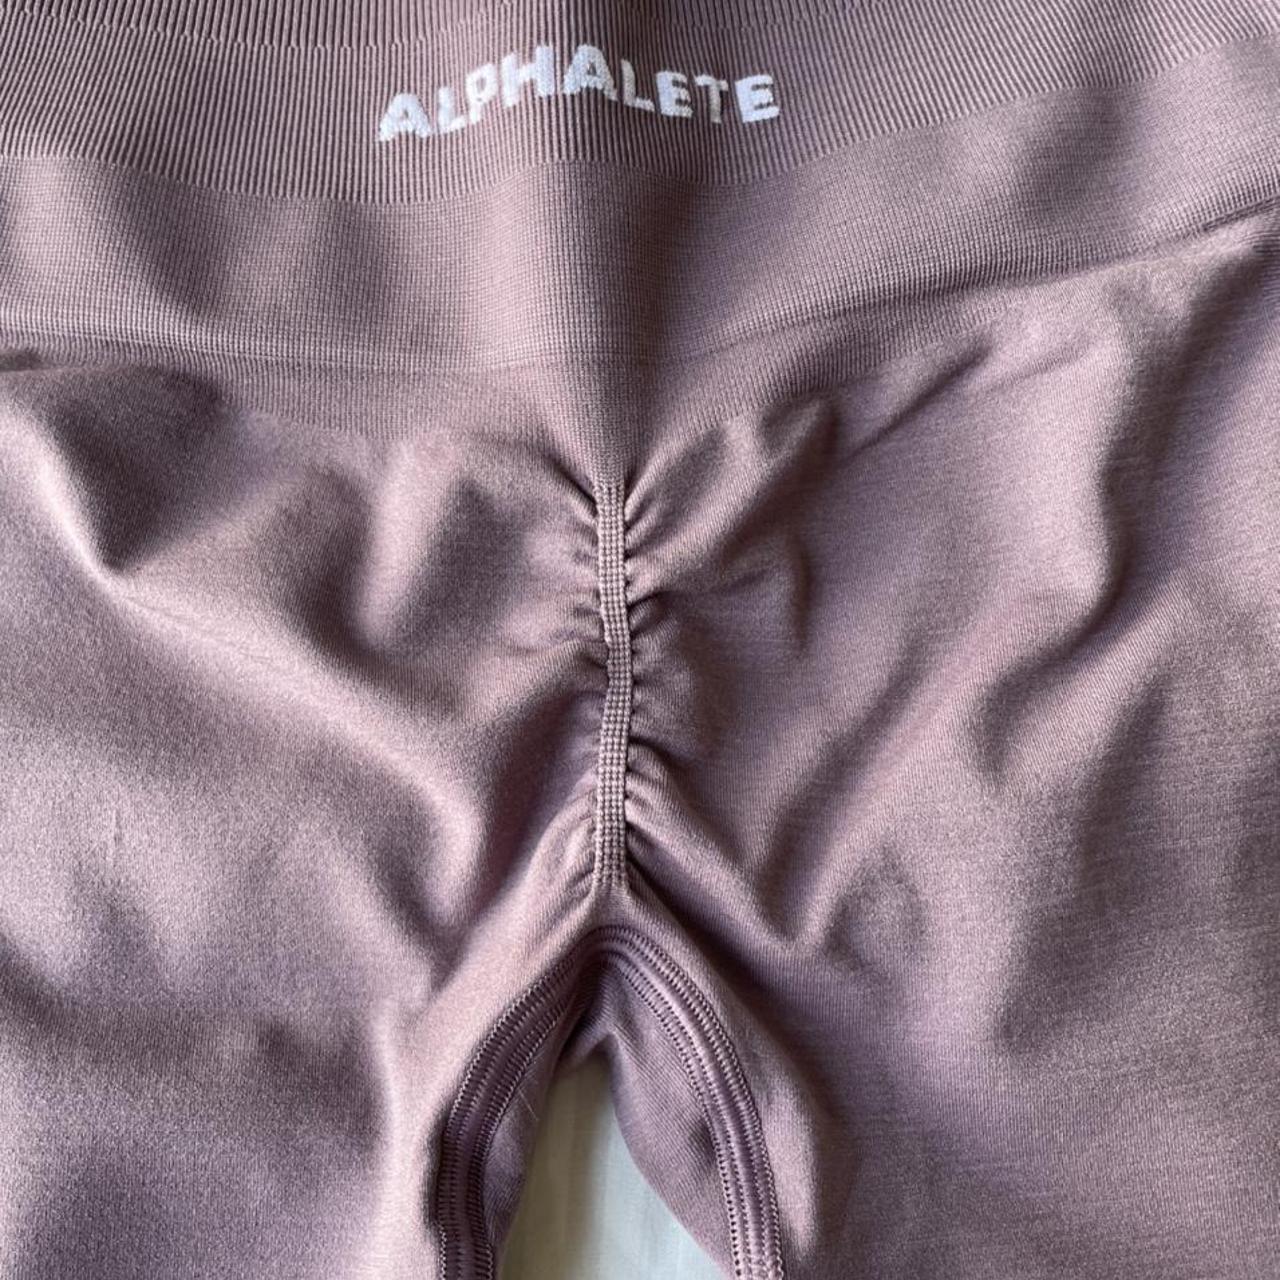 alphalete amplify leggings OG scrunch and fit size - Depop